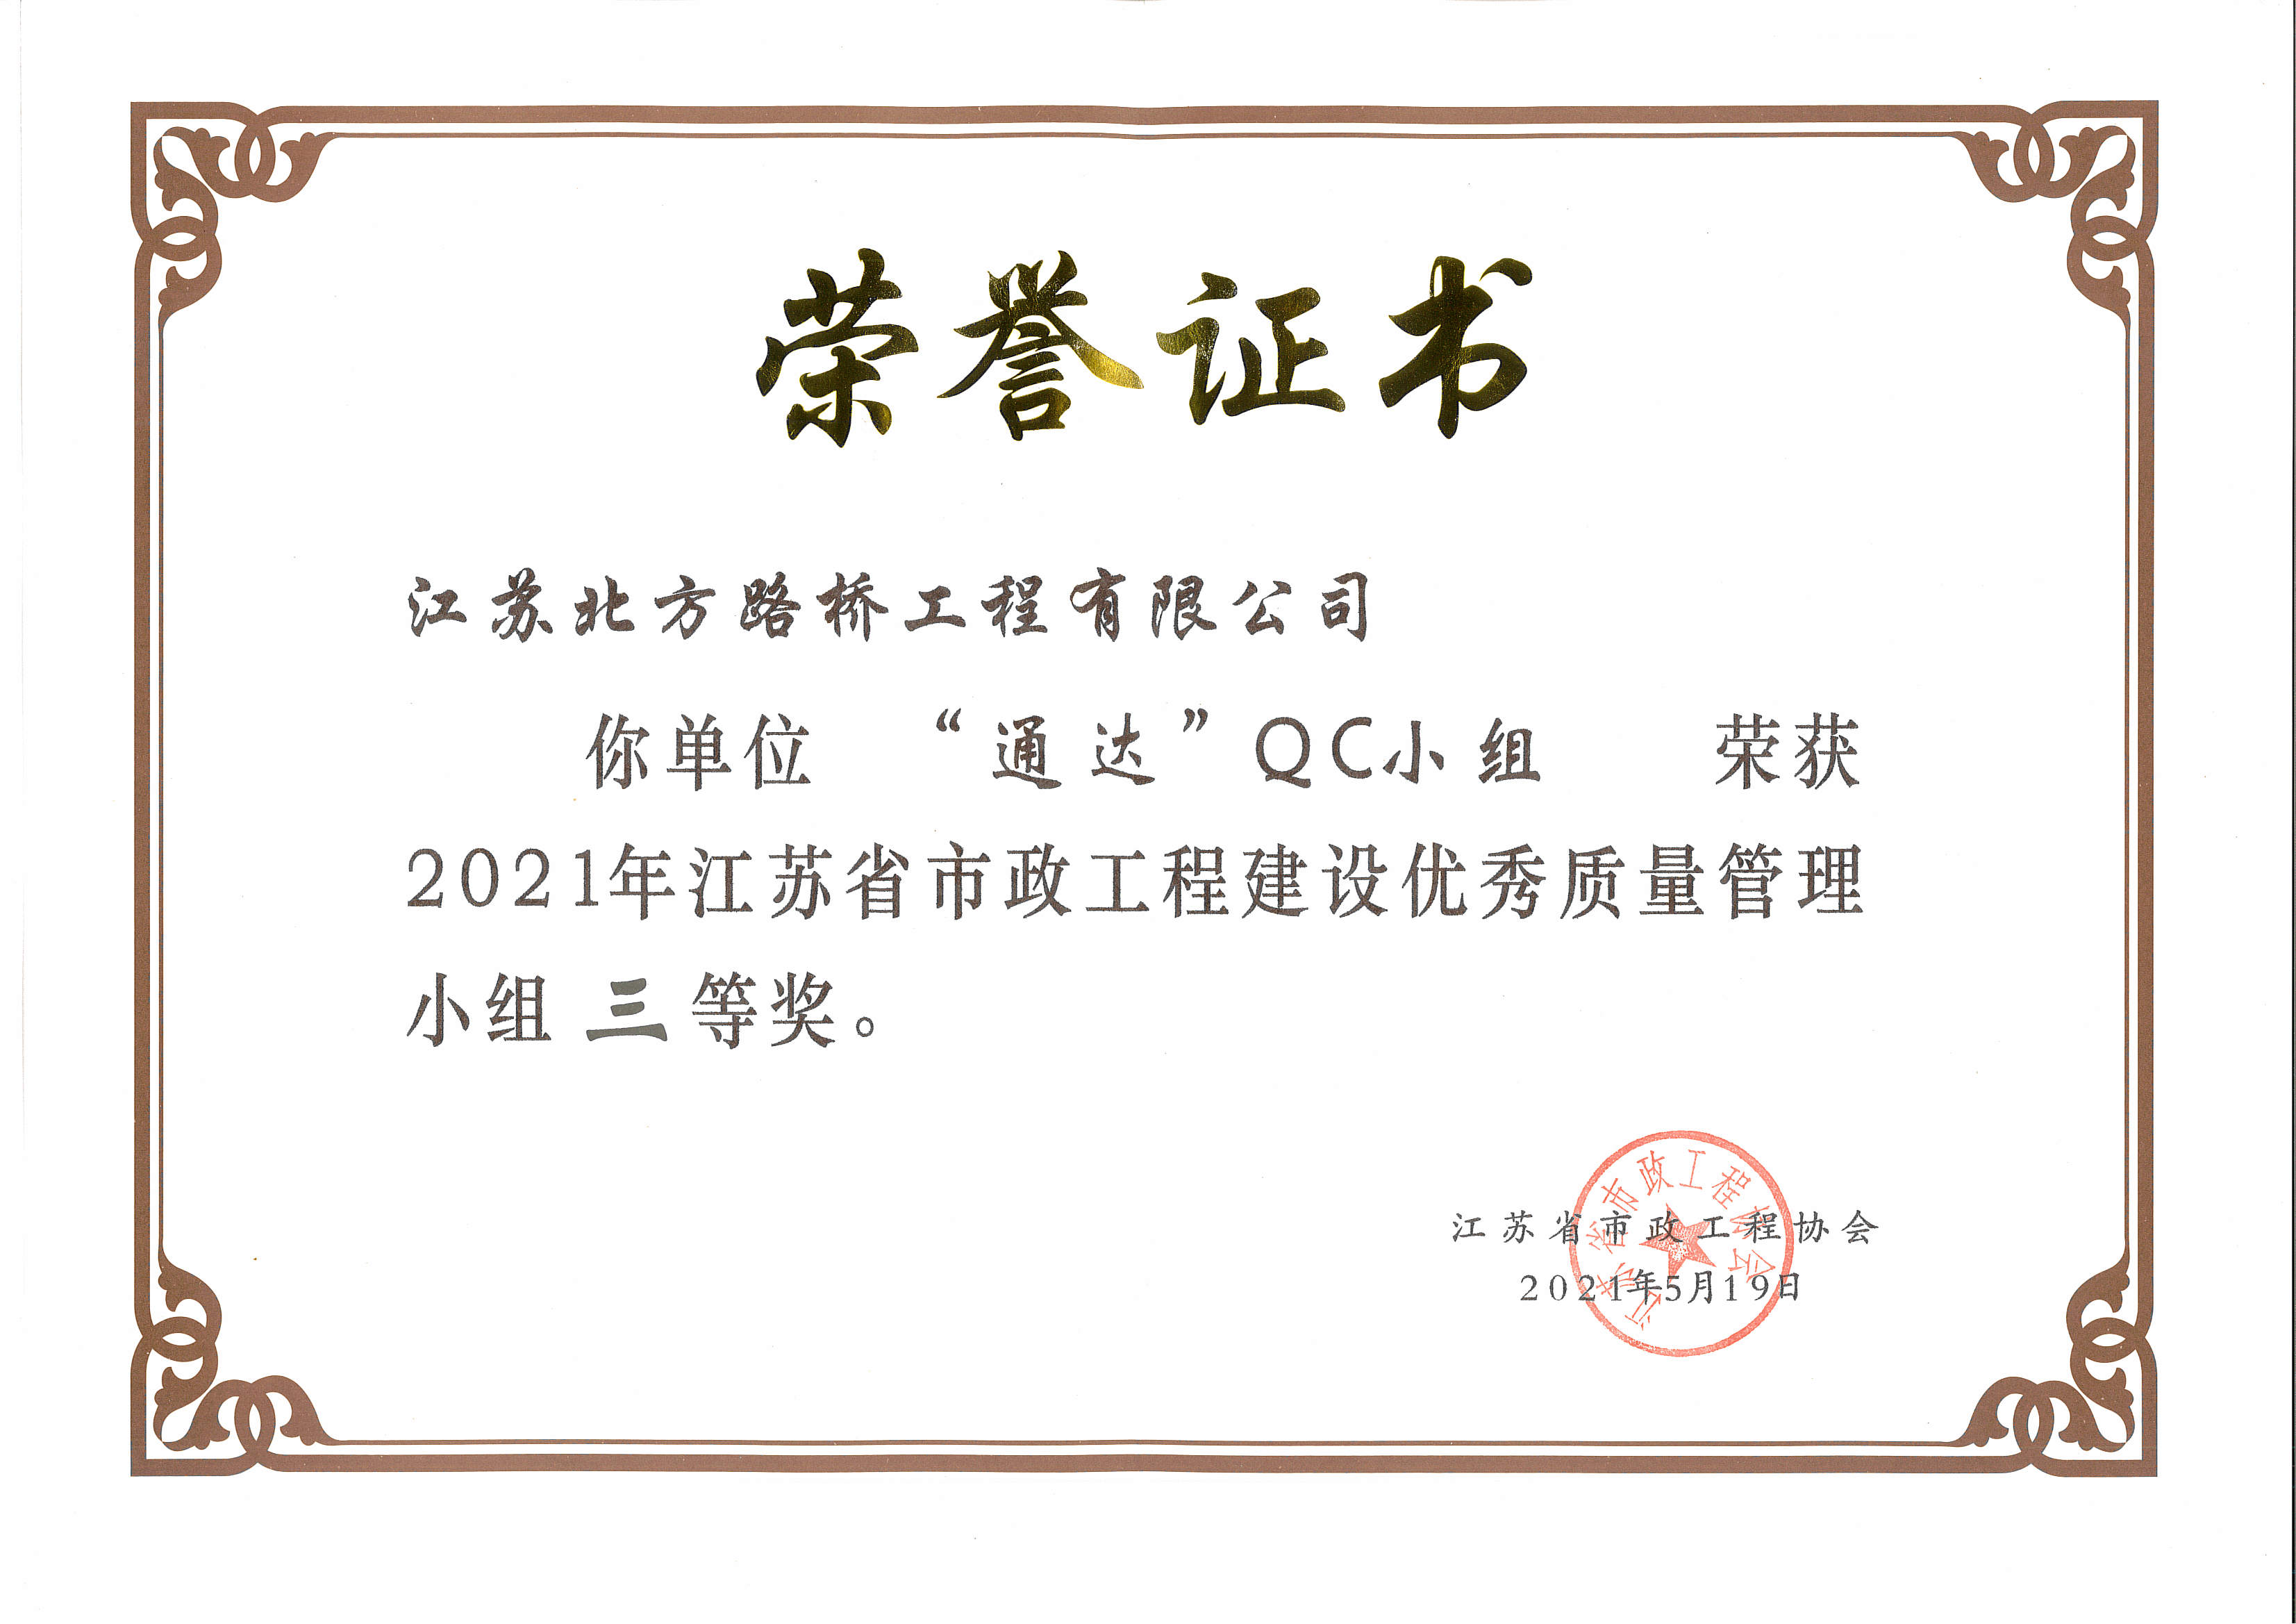 2021年江苏省市政工程建设优秀质量管理小组三等奖